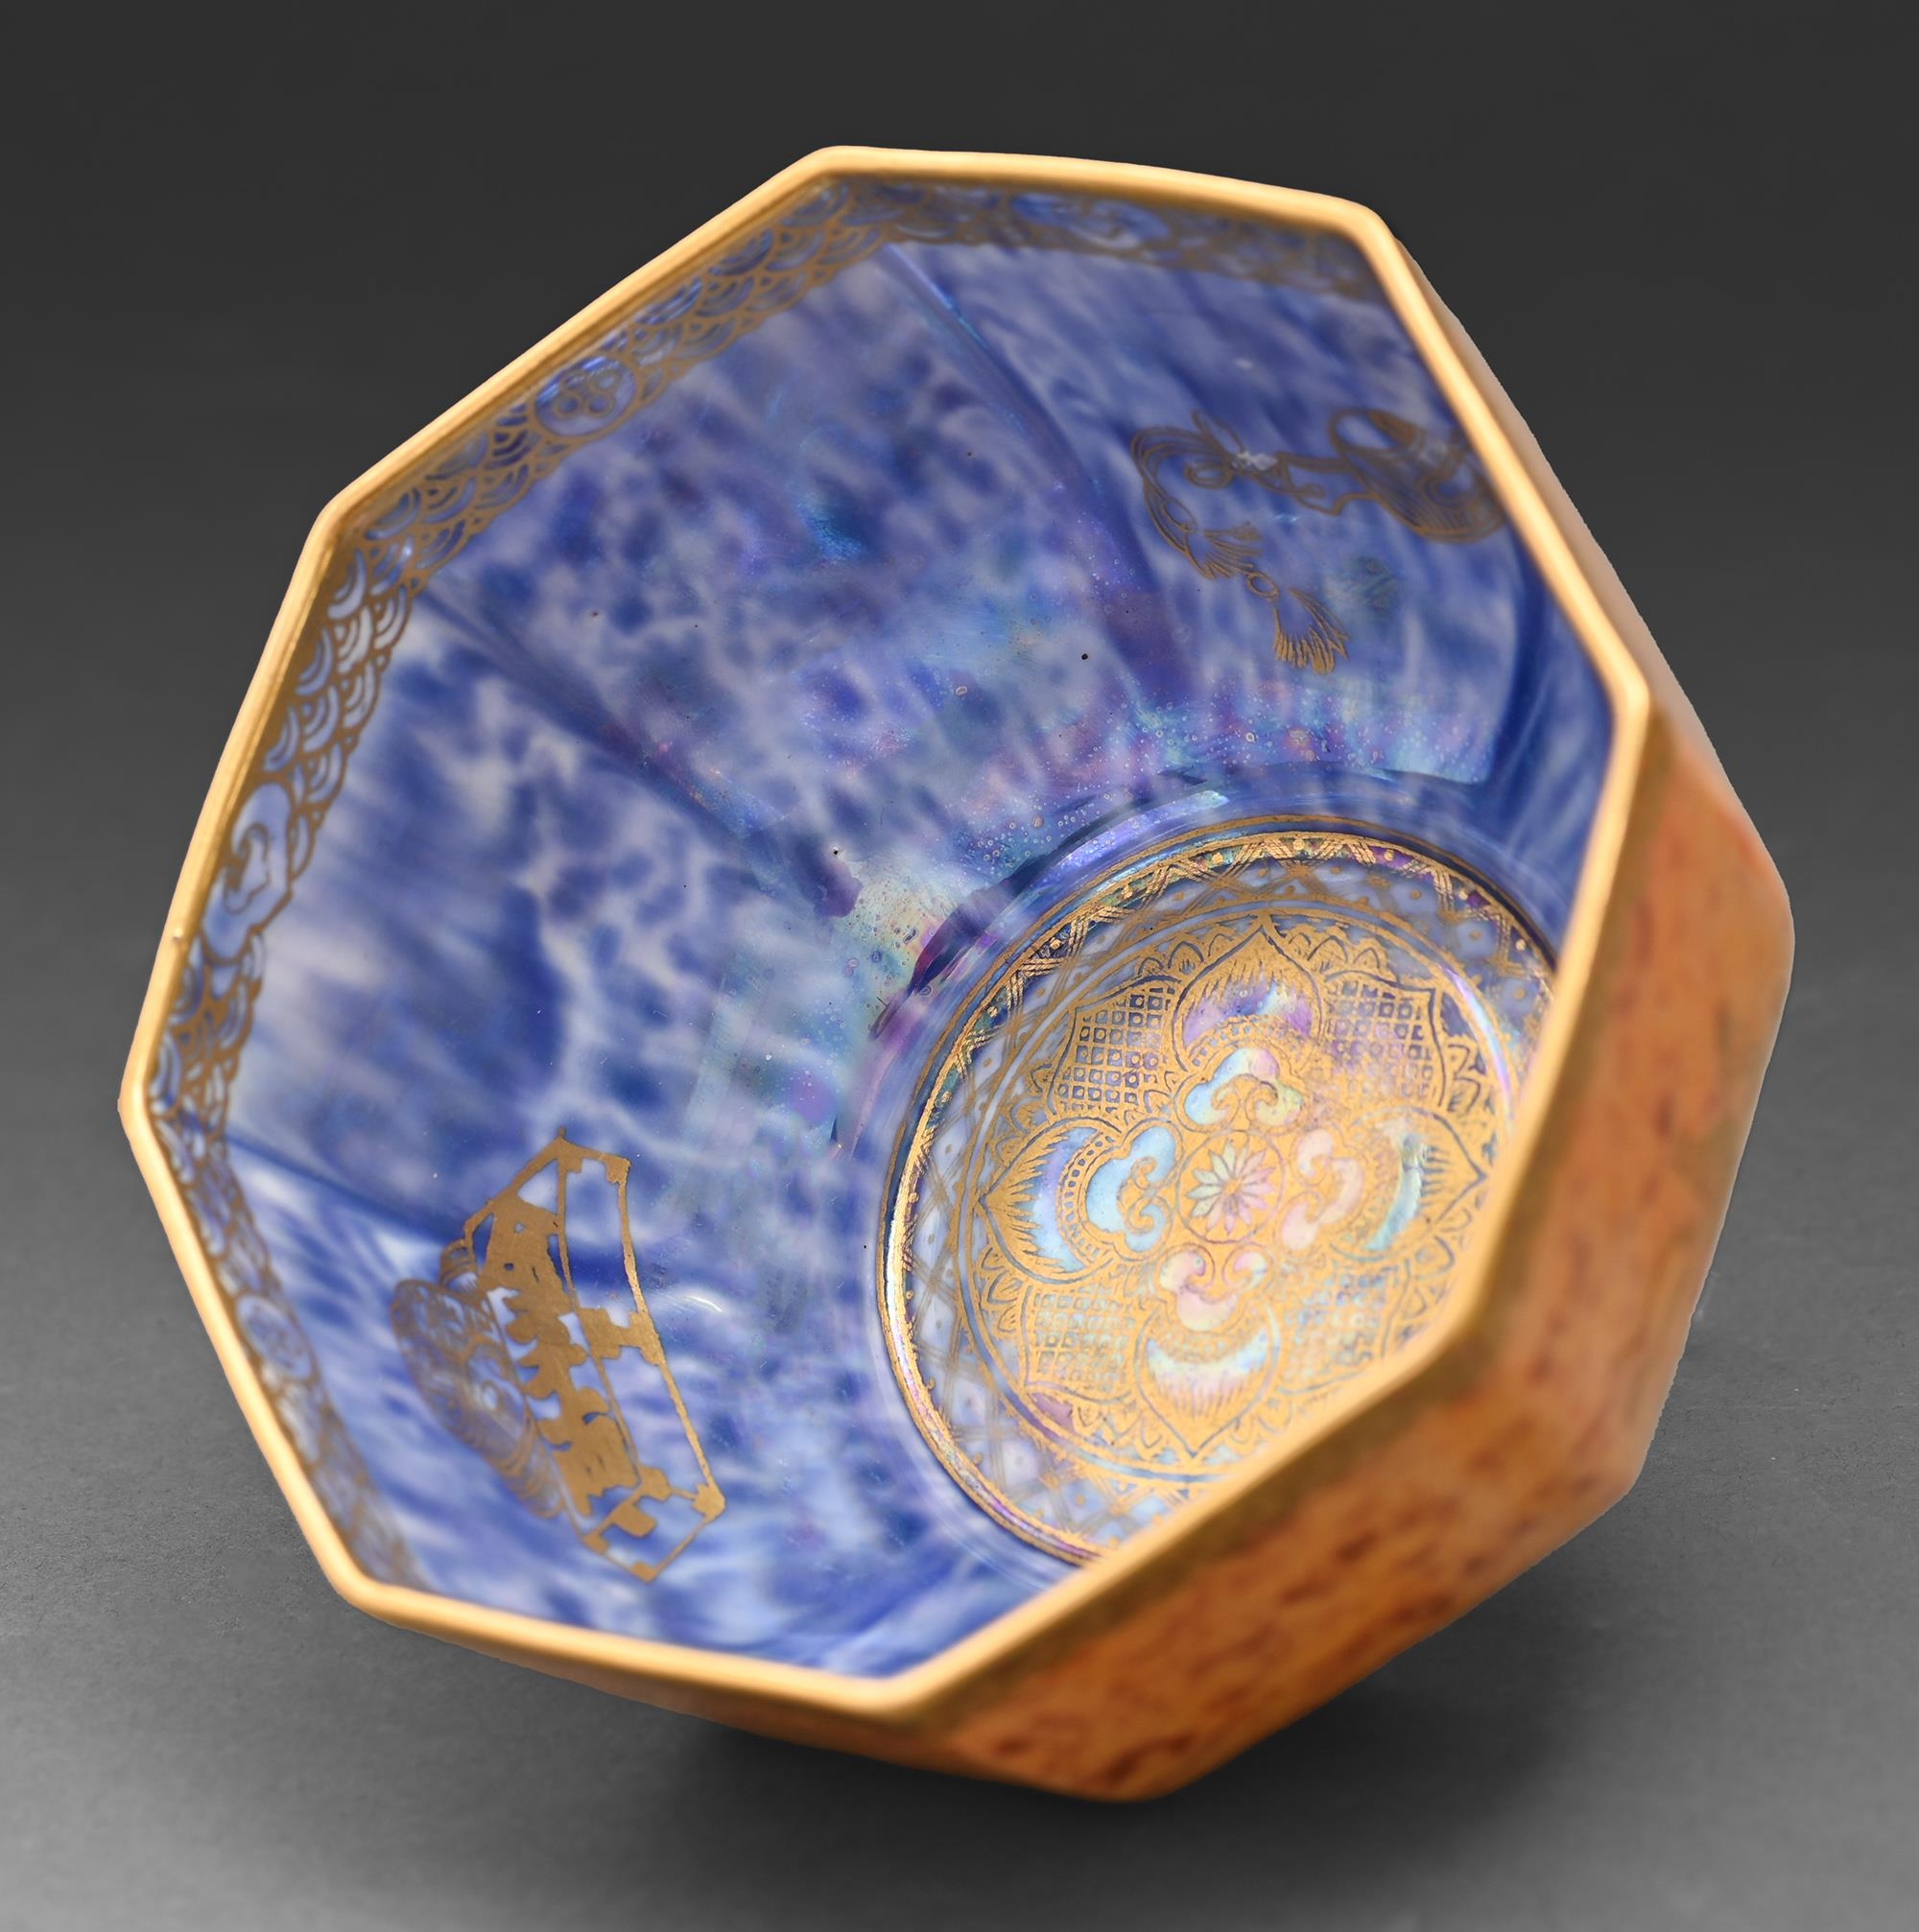 A Wedgwood Oriental Lustre Octagon Bowl, designed by Daisy Makeig Jones, c1920, 12.5cm diam, gilt - Image 2 of 2